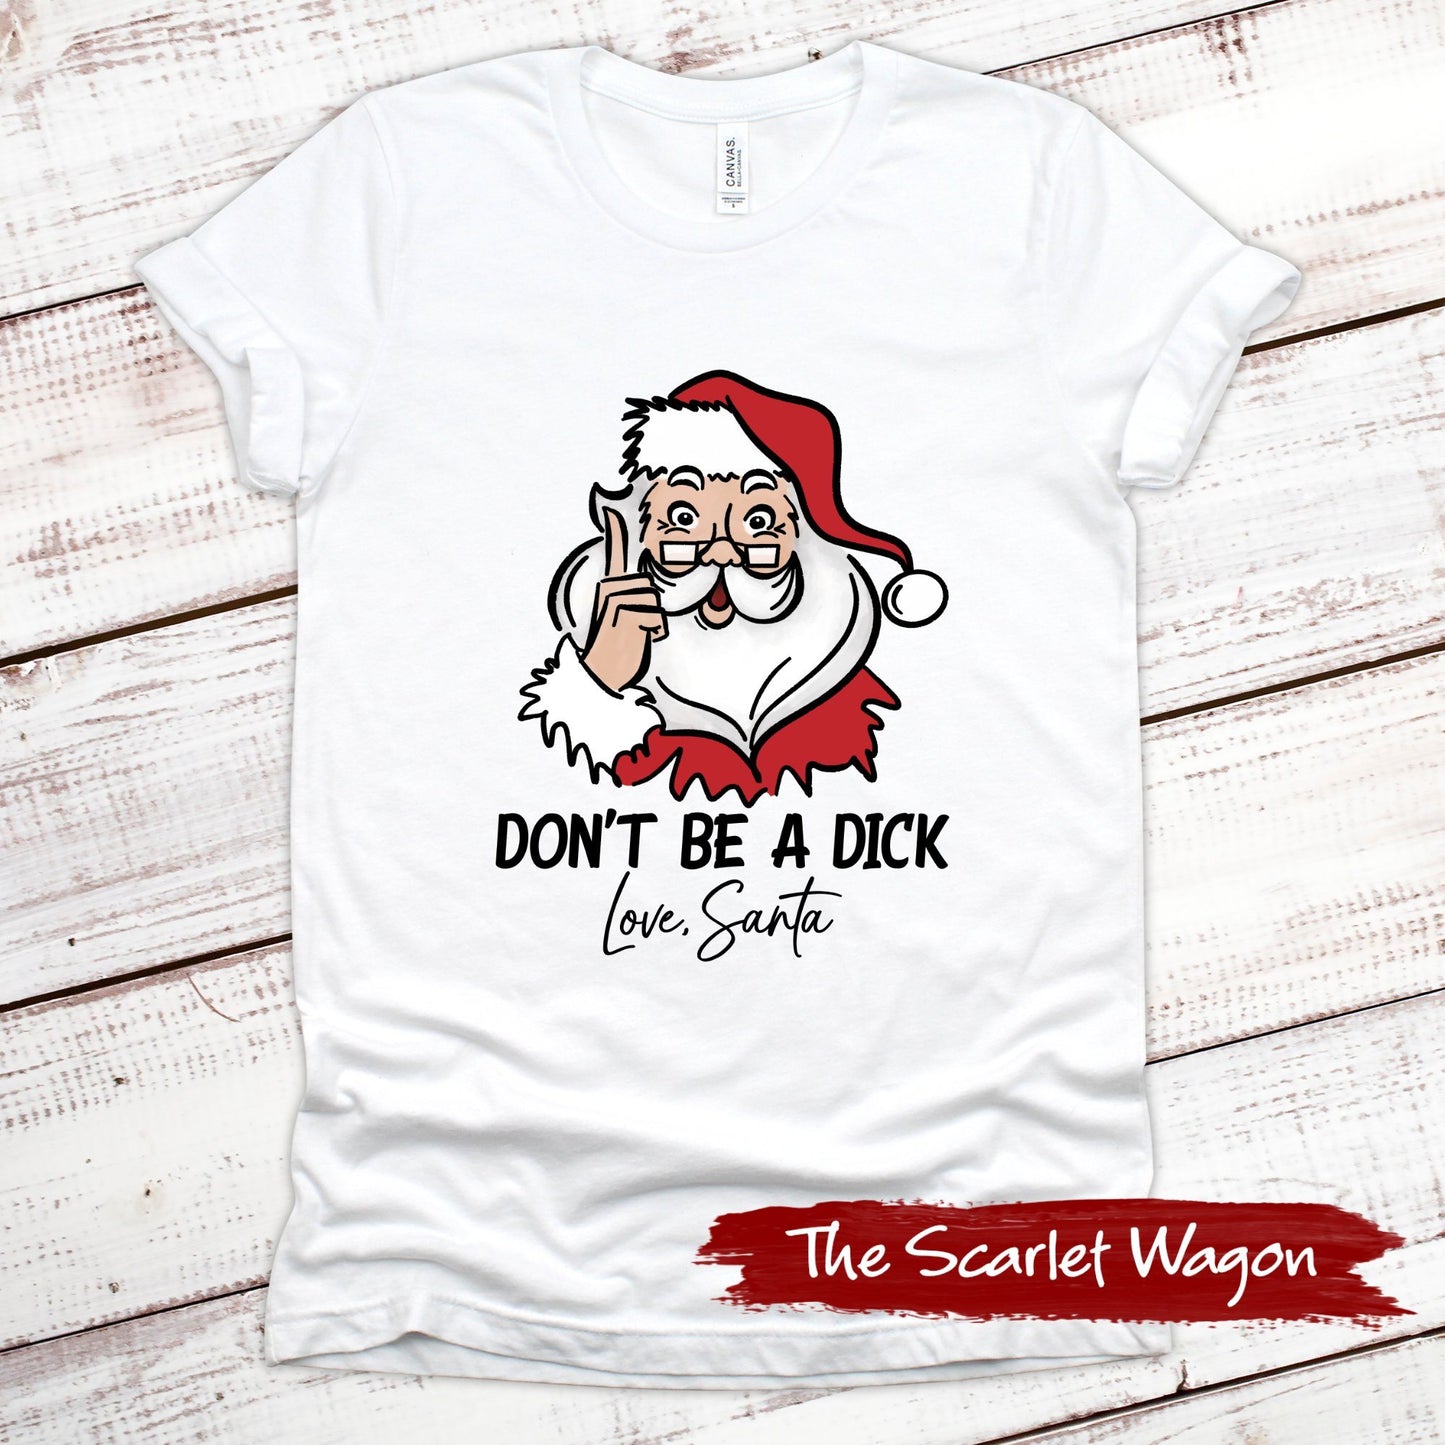 Don't Be a Dick - Love, Santa Christmas Shirt Scarlet Wagon White XS 